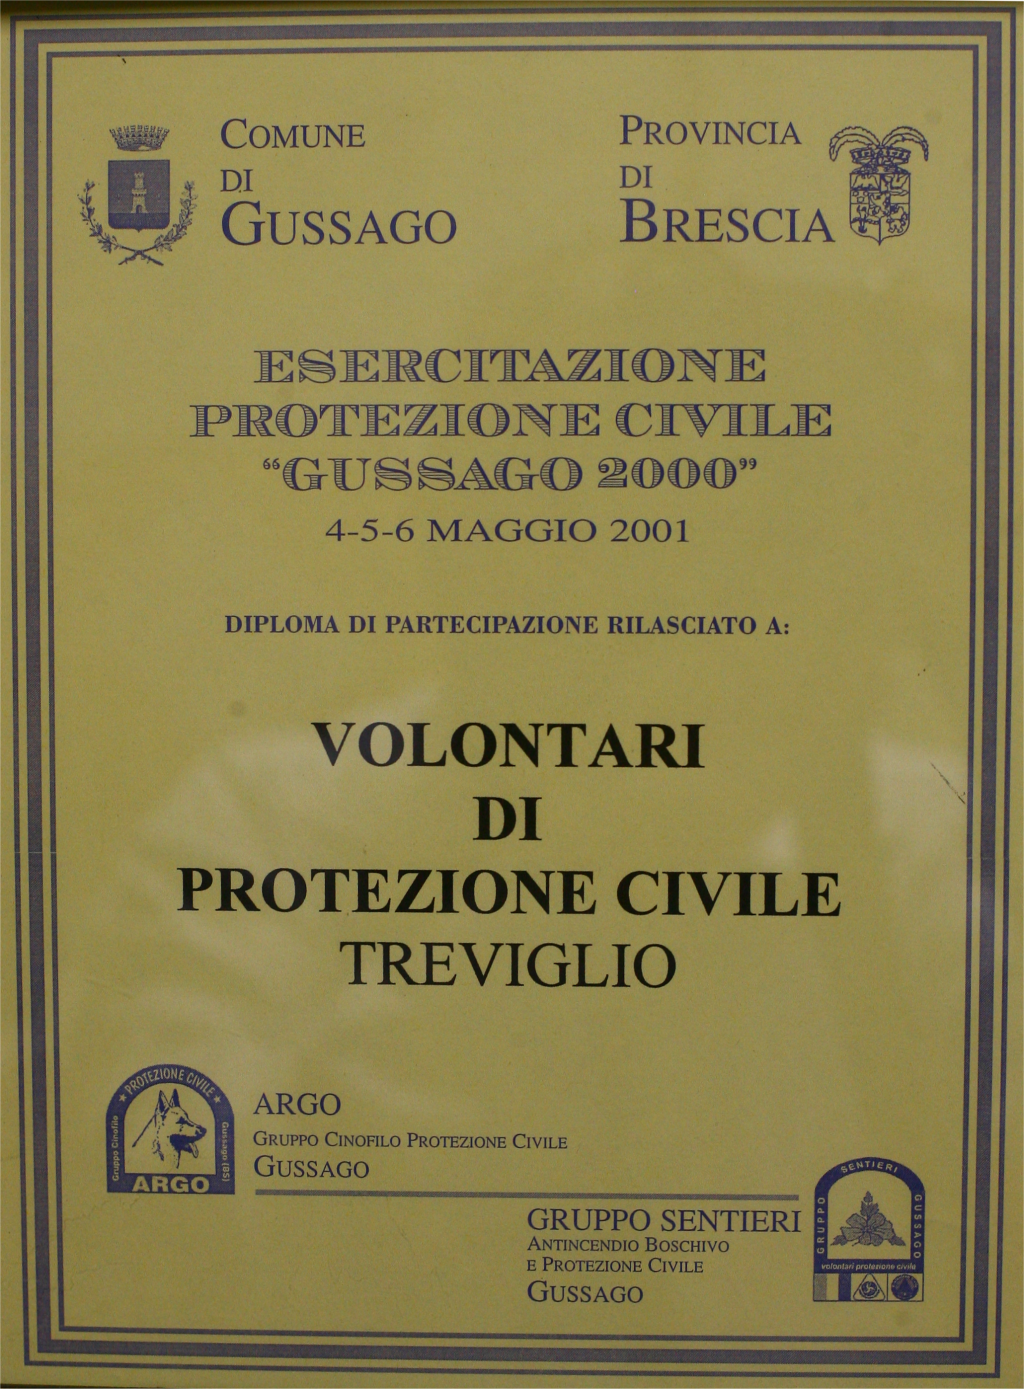 Diploma partecipazione esercitazione di Protezione Civile -Gussago 2000- a Gussago (BS).